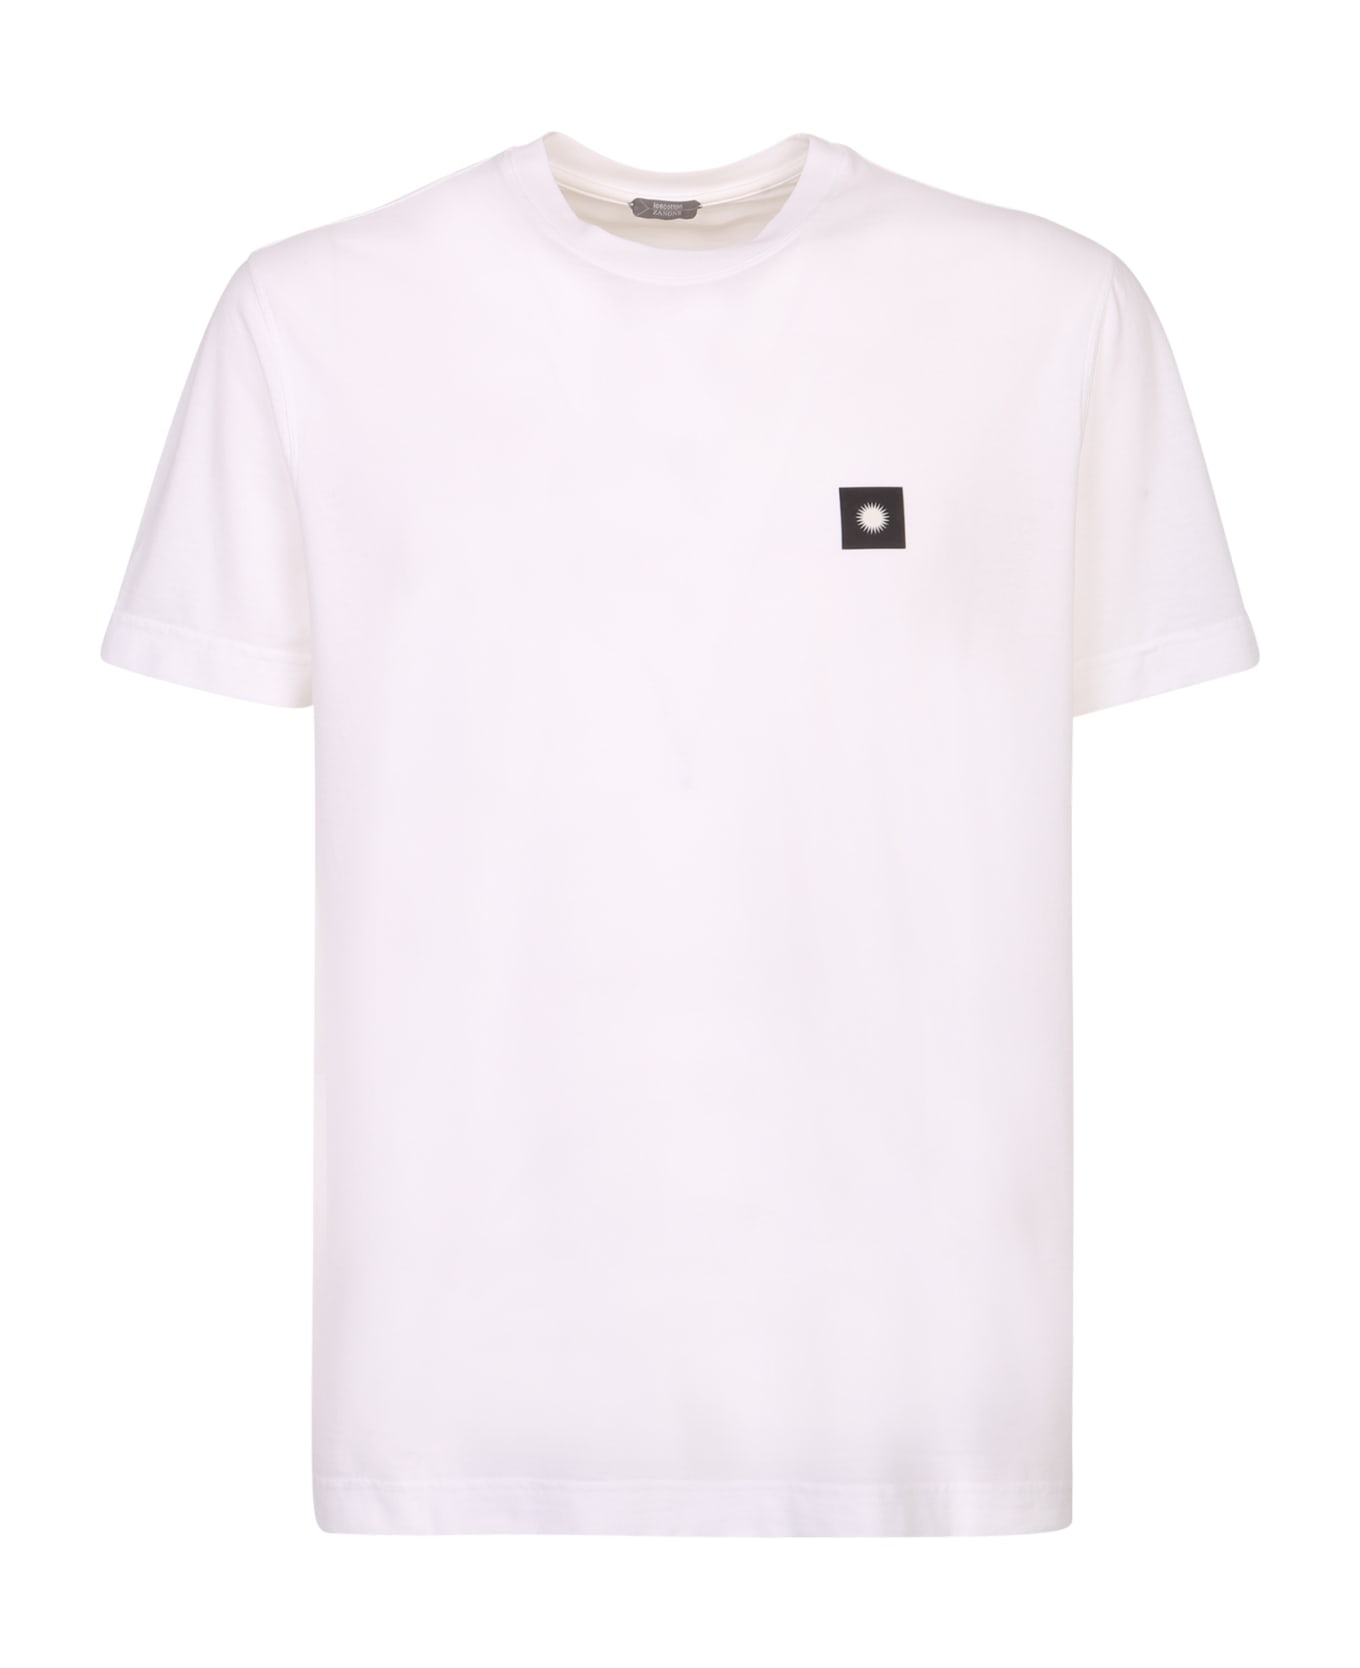 Zanone Patch T-shirt - White